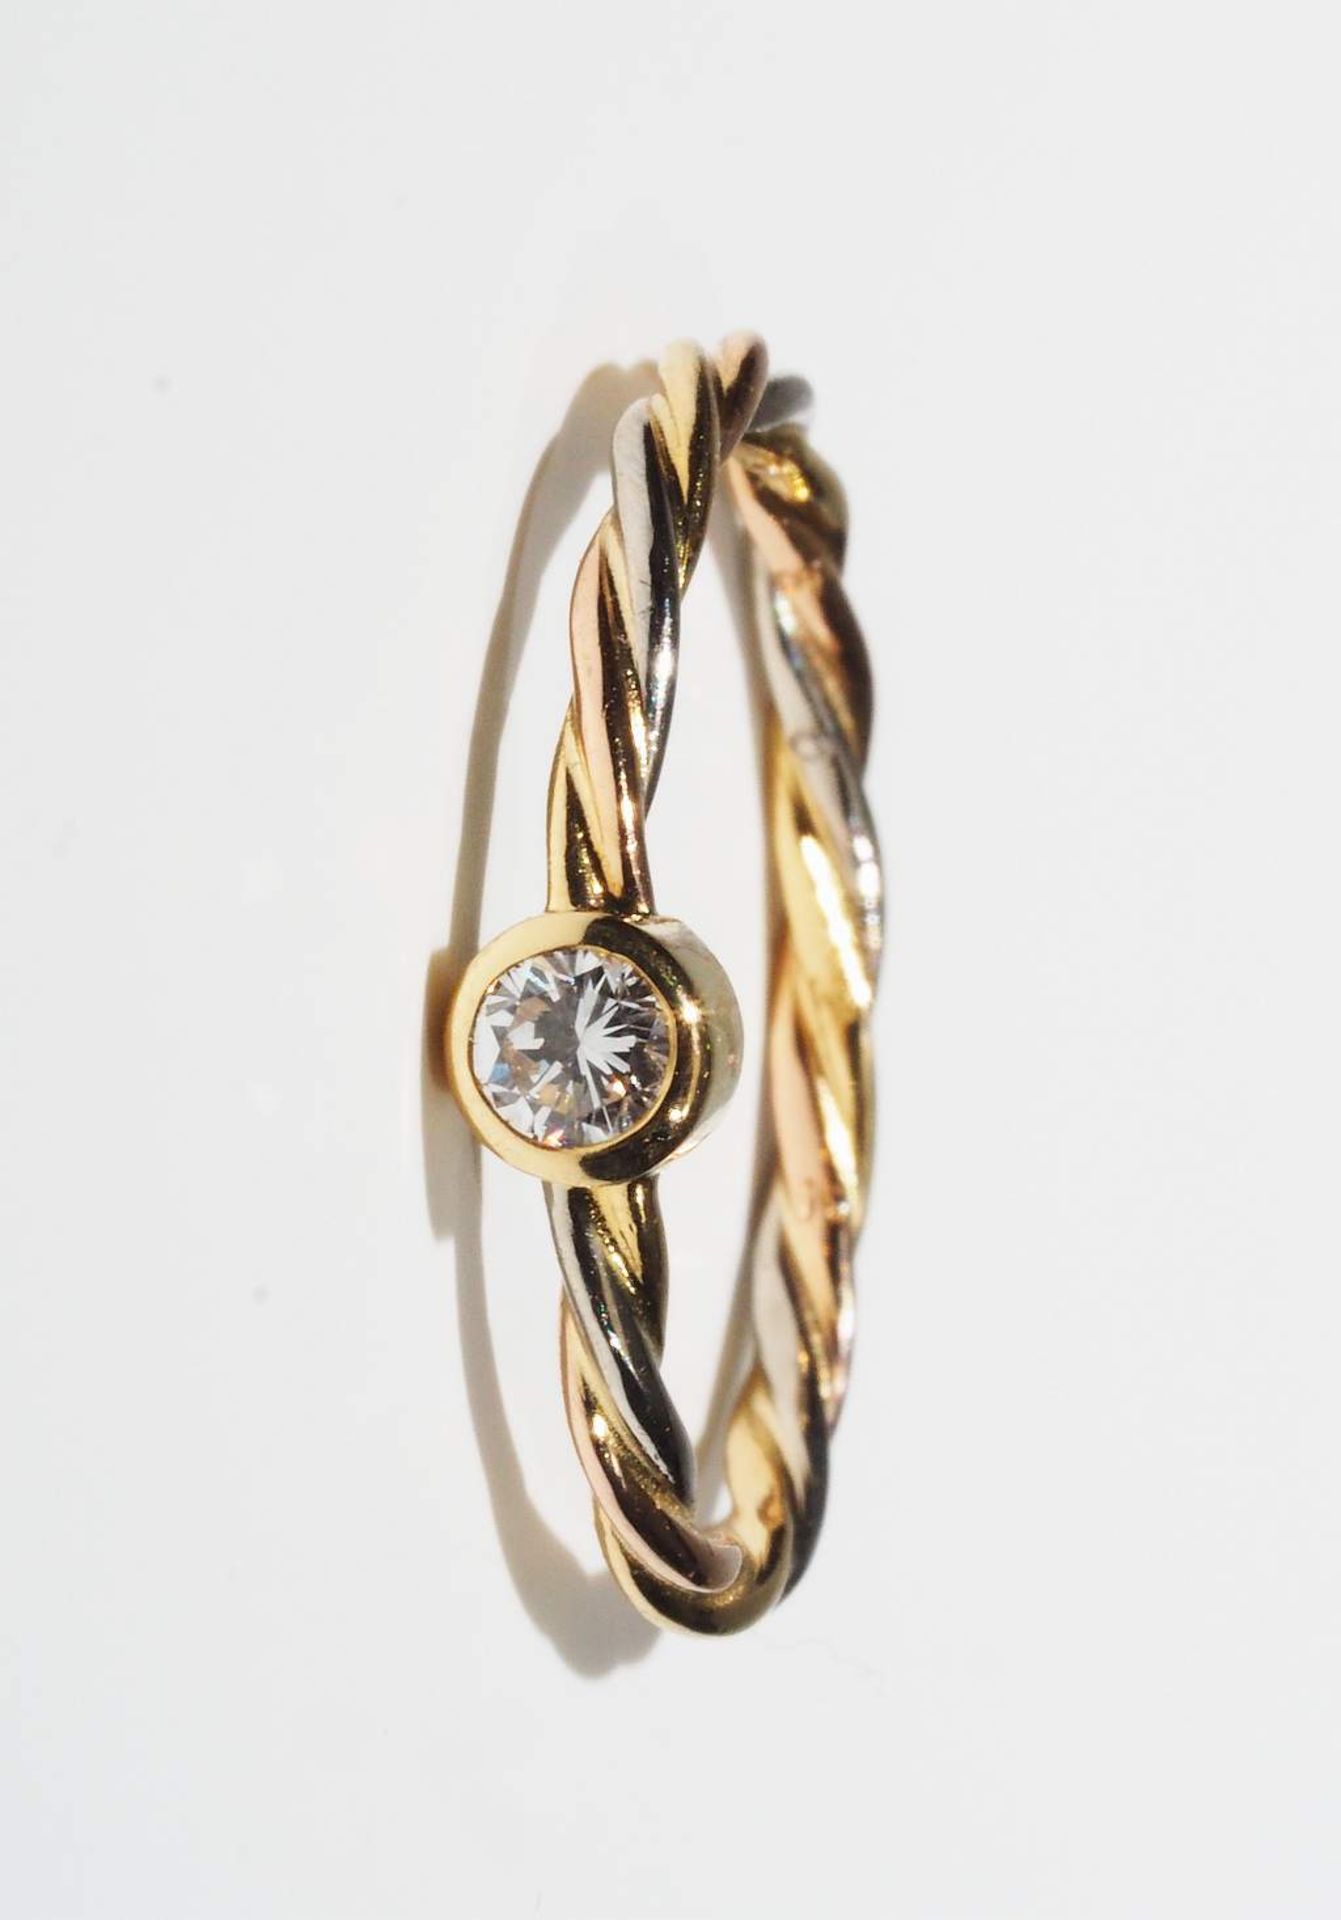 Vintage Ring CARTIER, 750er Gelbgold. - Image 2 of 5